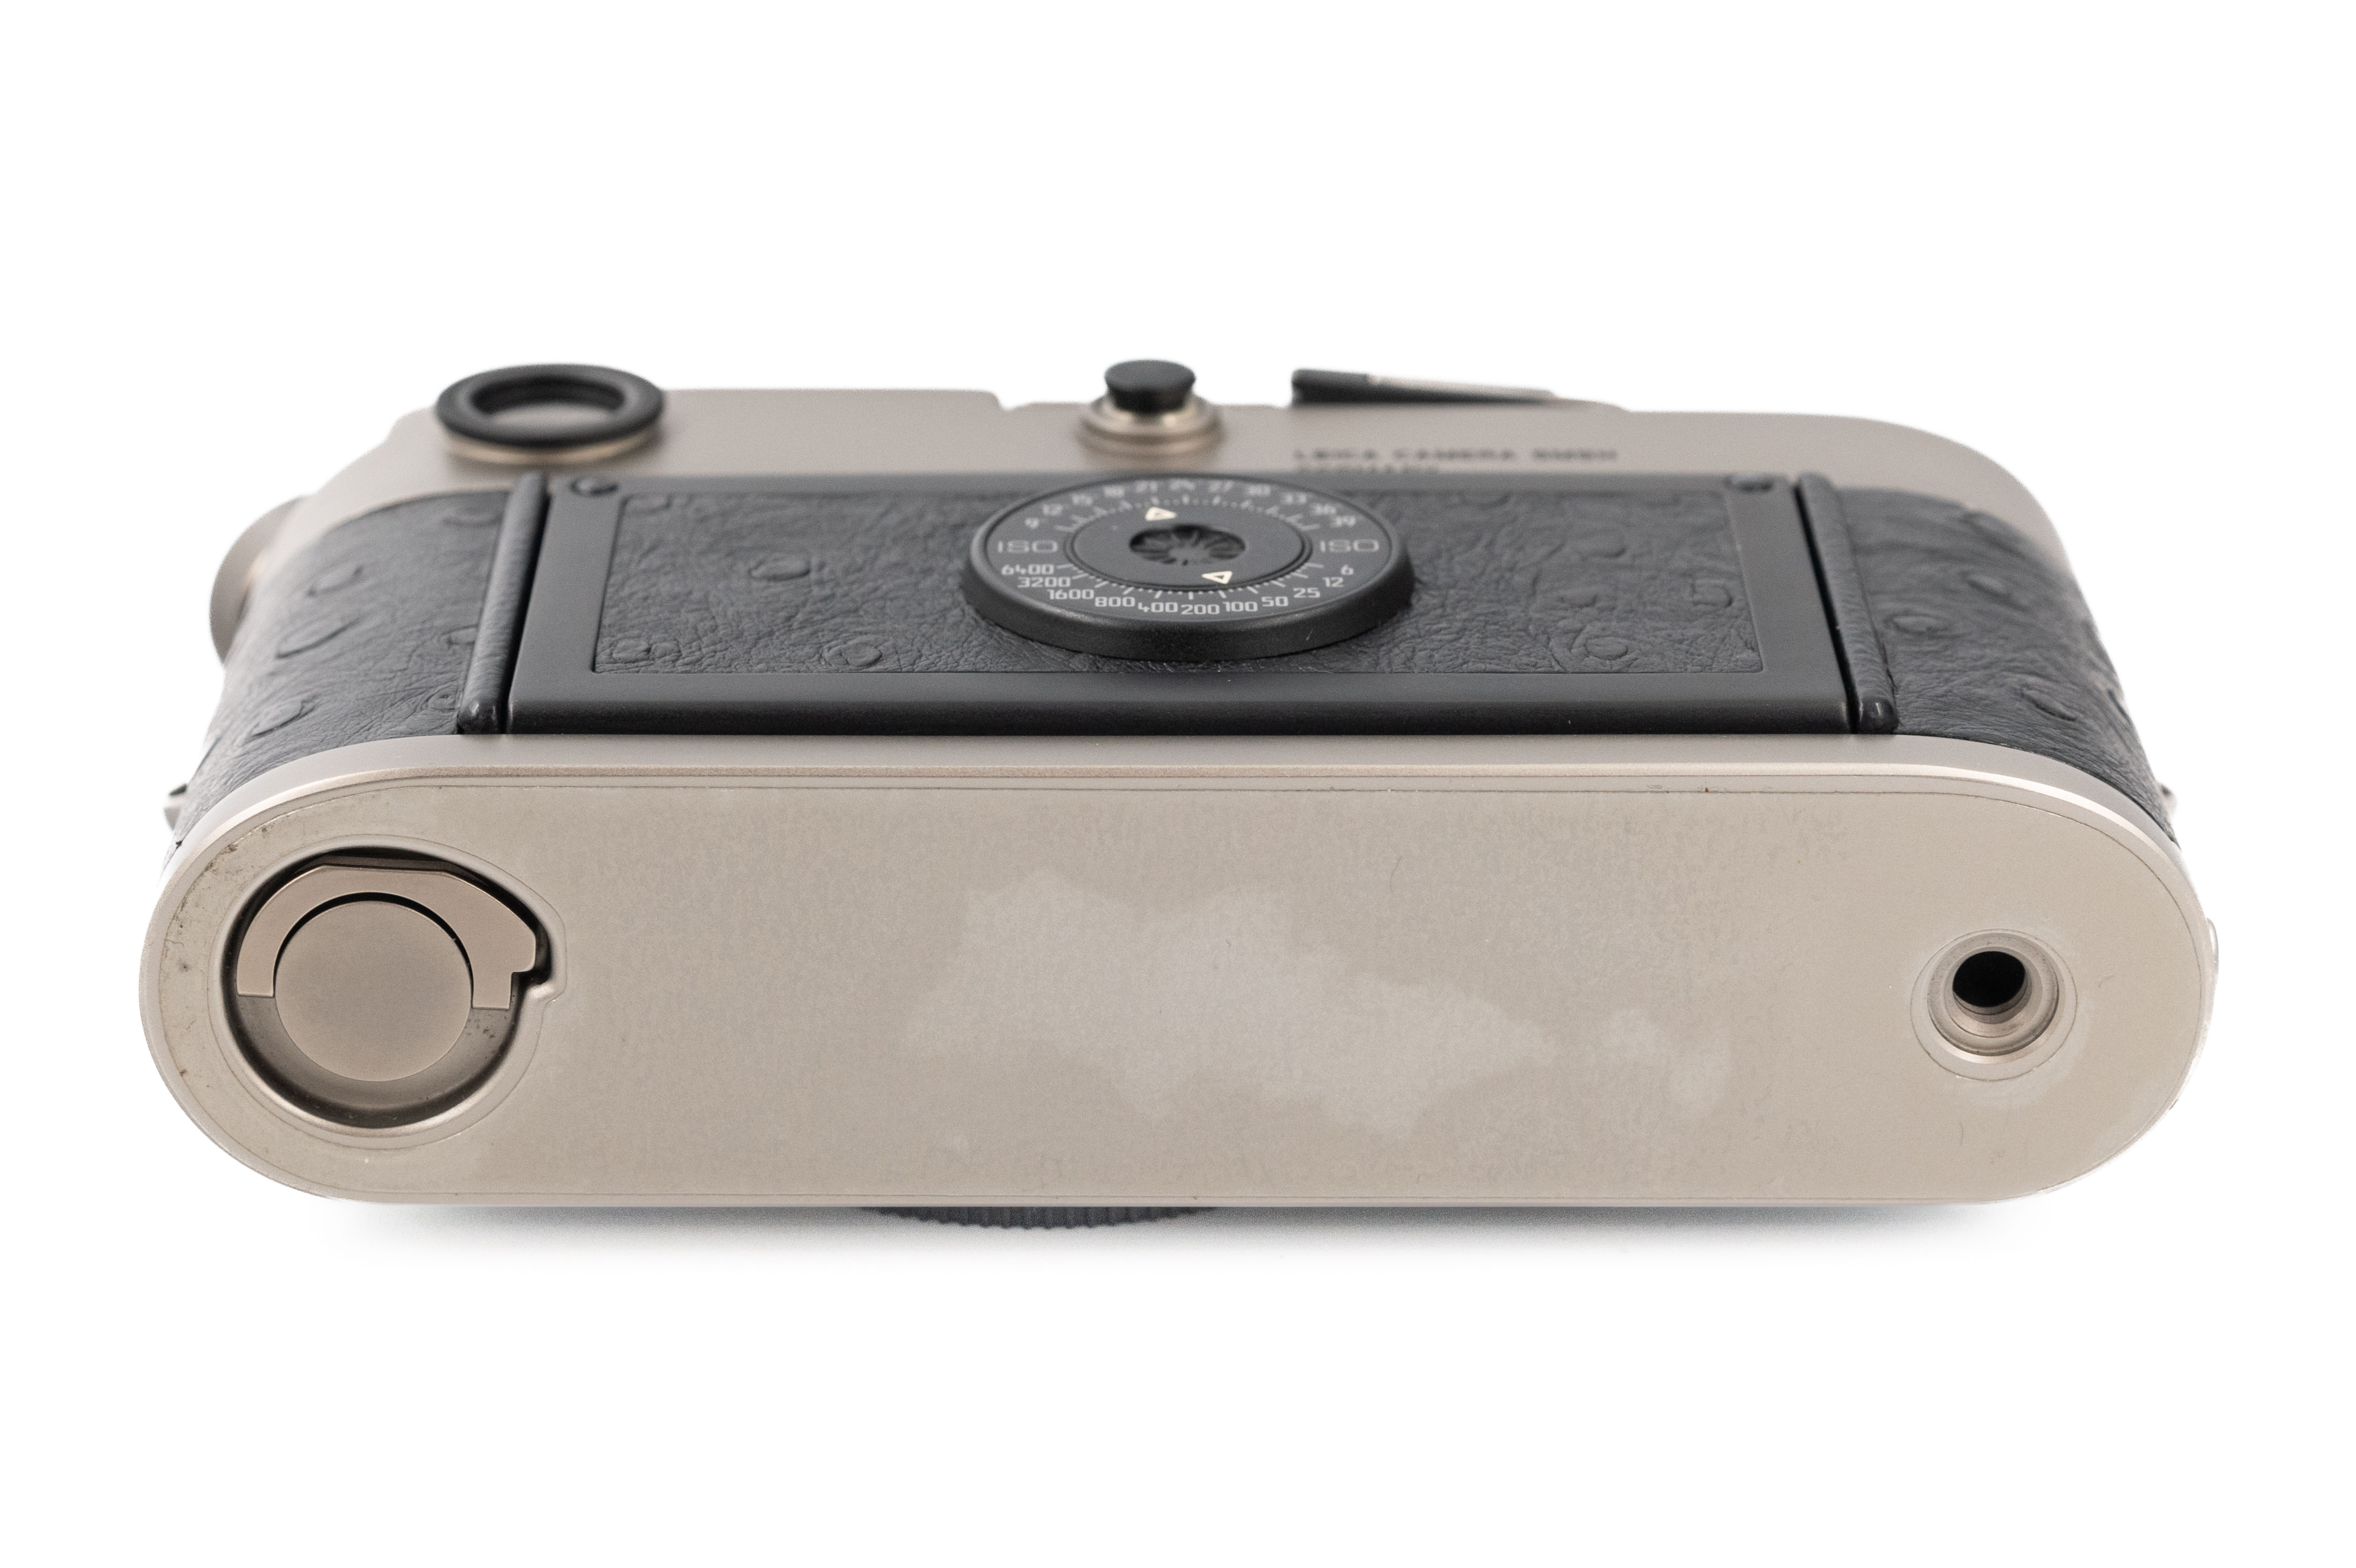 Leica M6 Classic 0.72x Titanium 10412